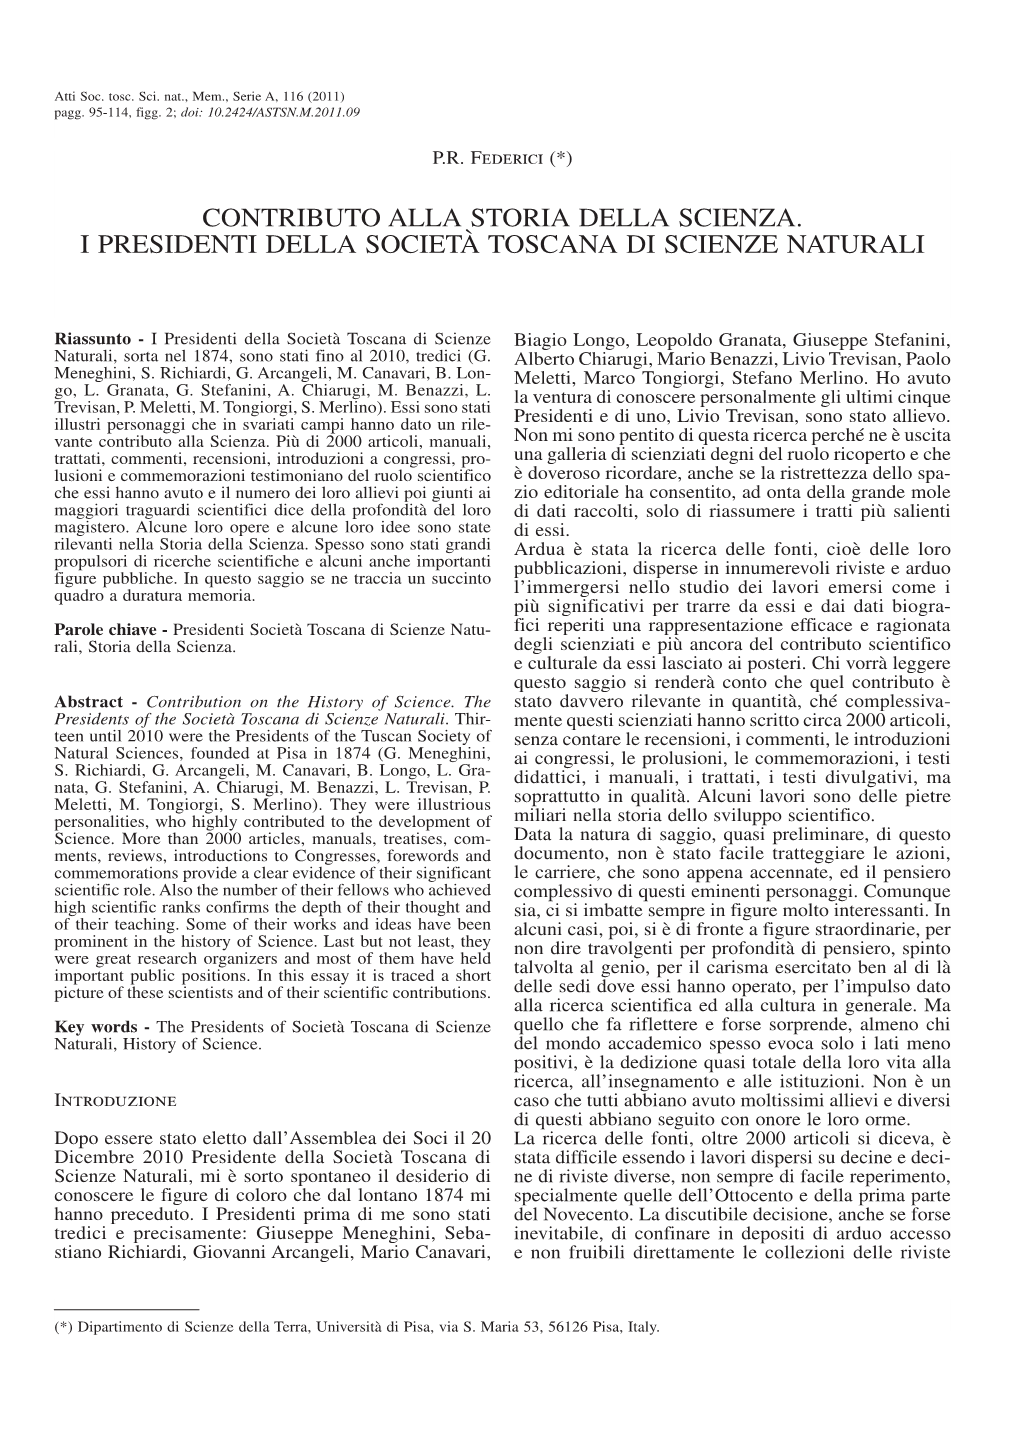 Contributo Alla Storia Della Scienza. I Presidenti Della Società Toscana Di Scienze Naturali